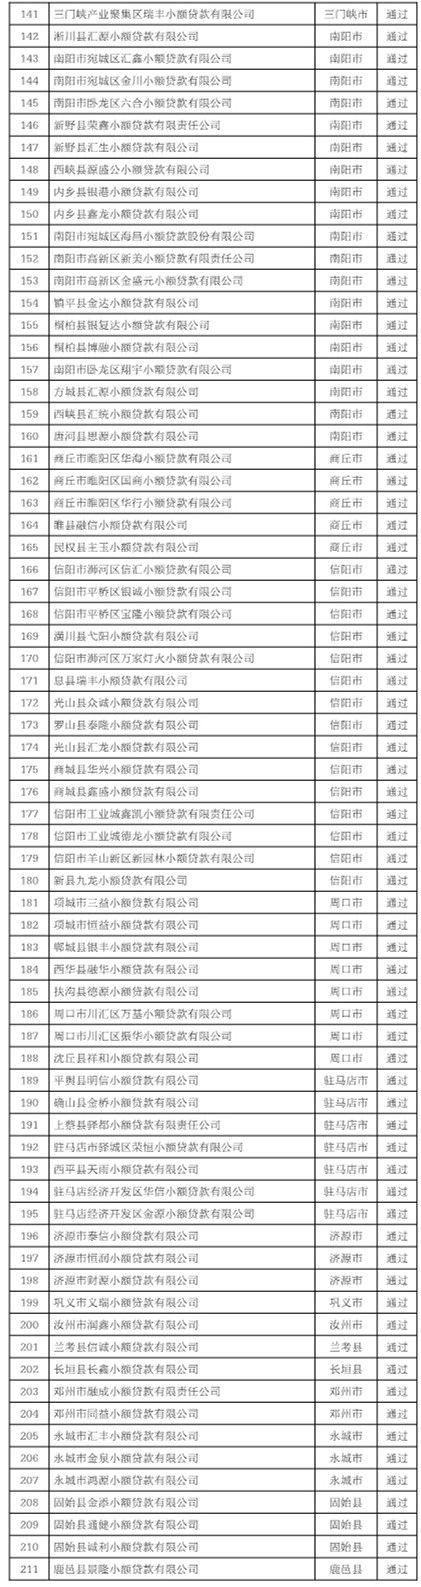 河南220家融资担保、211家小额贷款公司拟通过年审｜名单